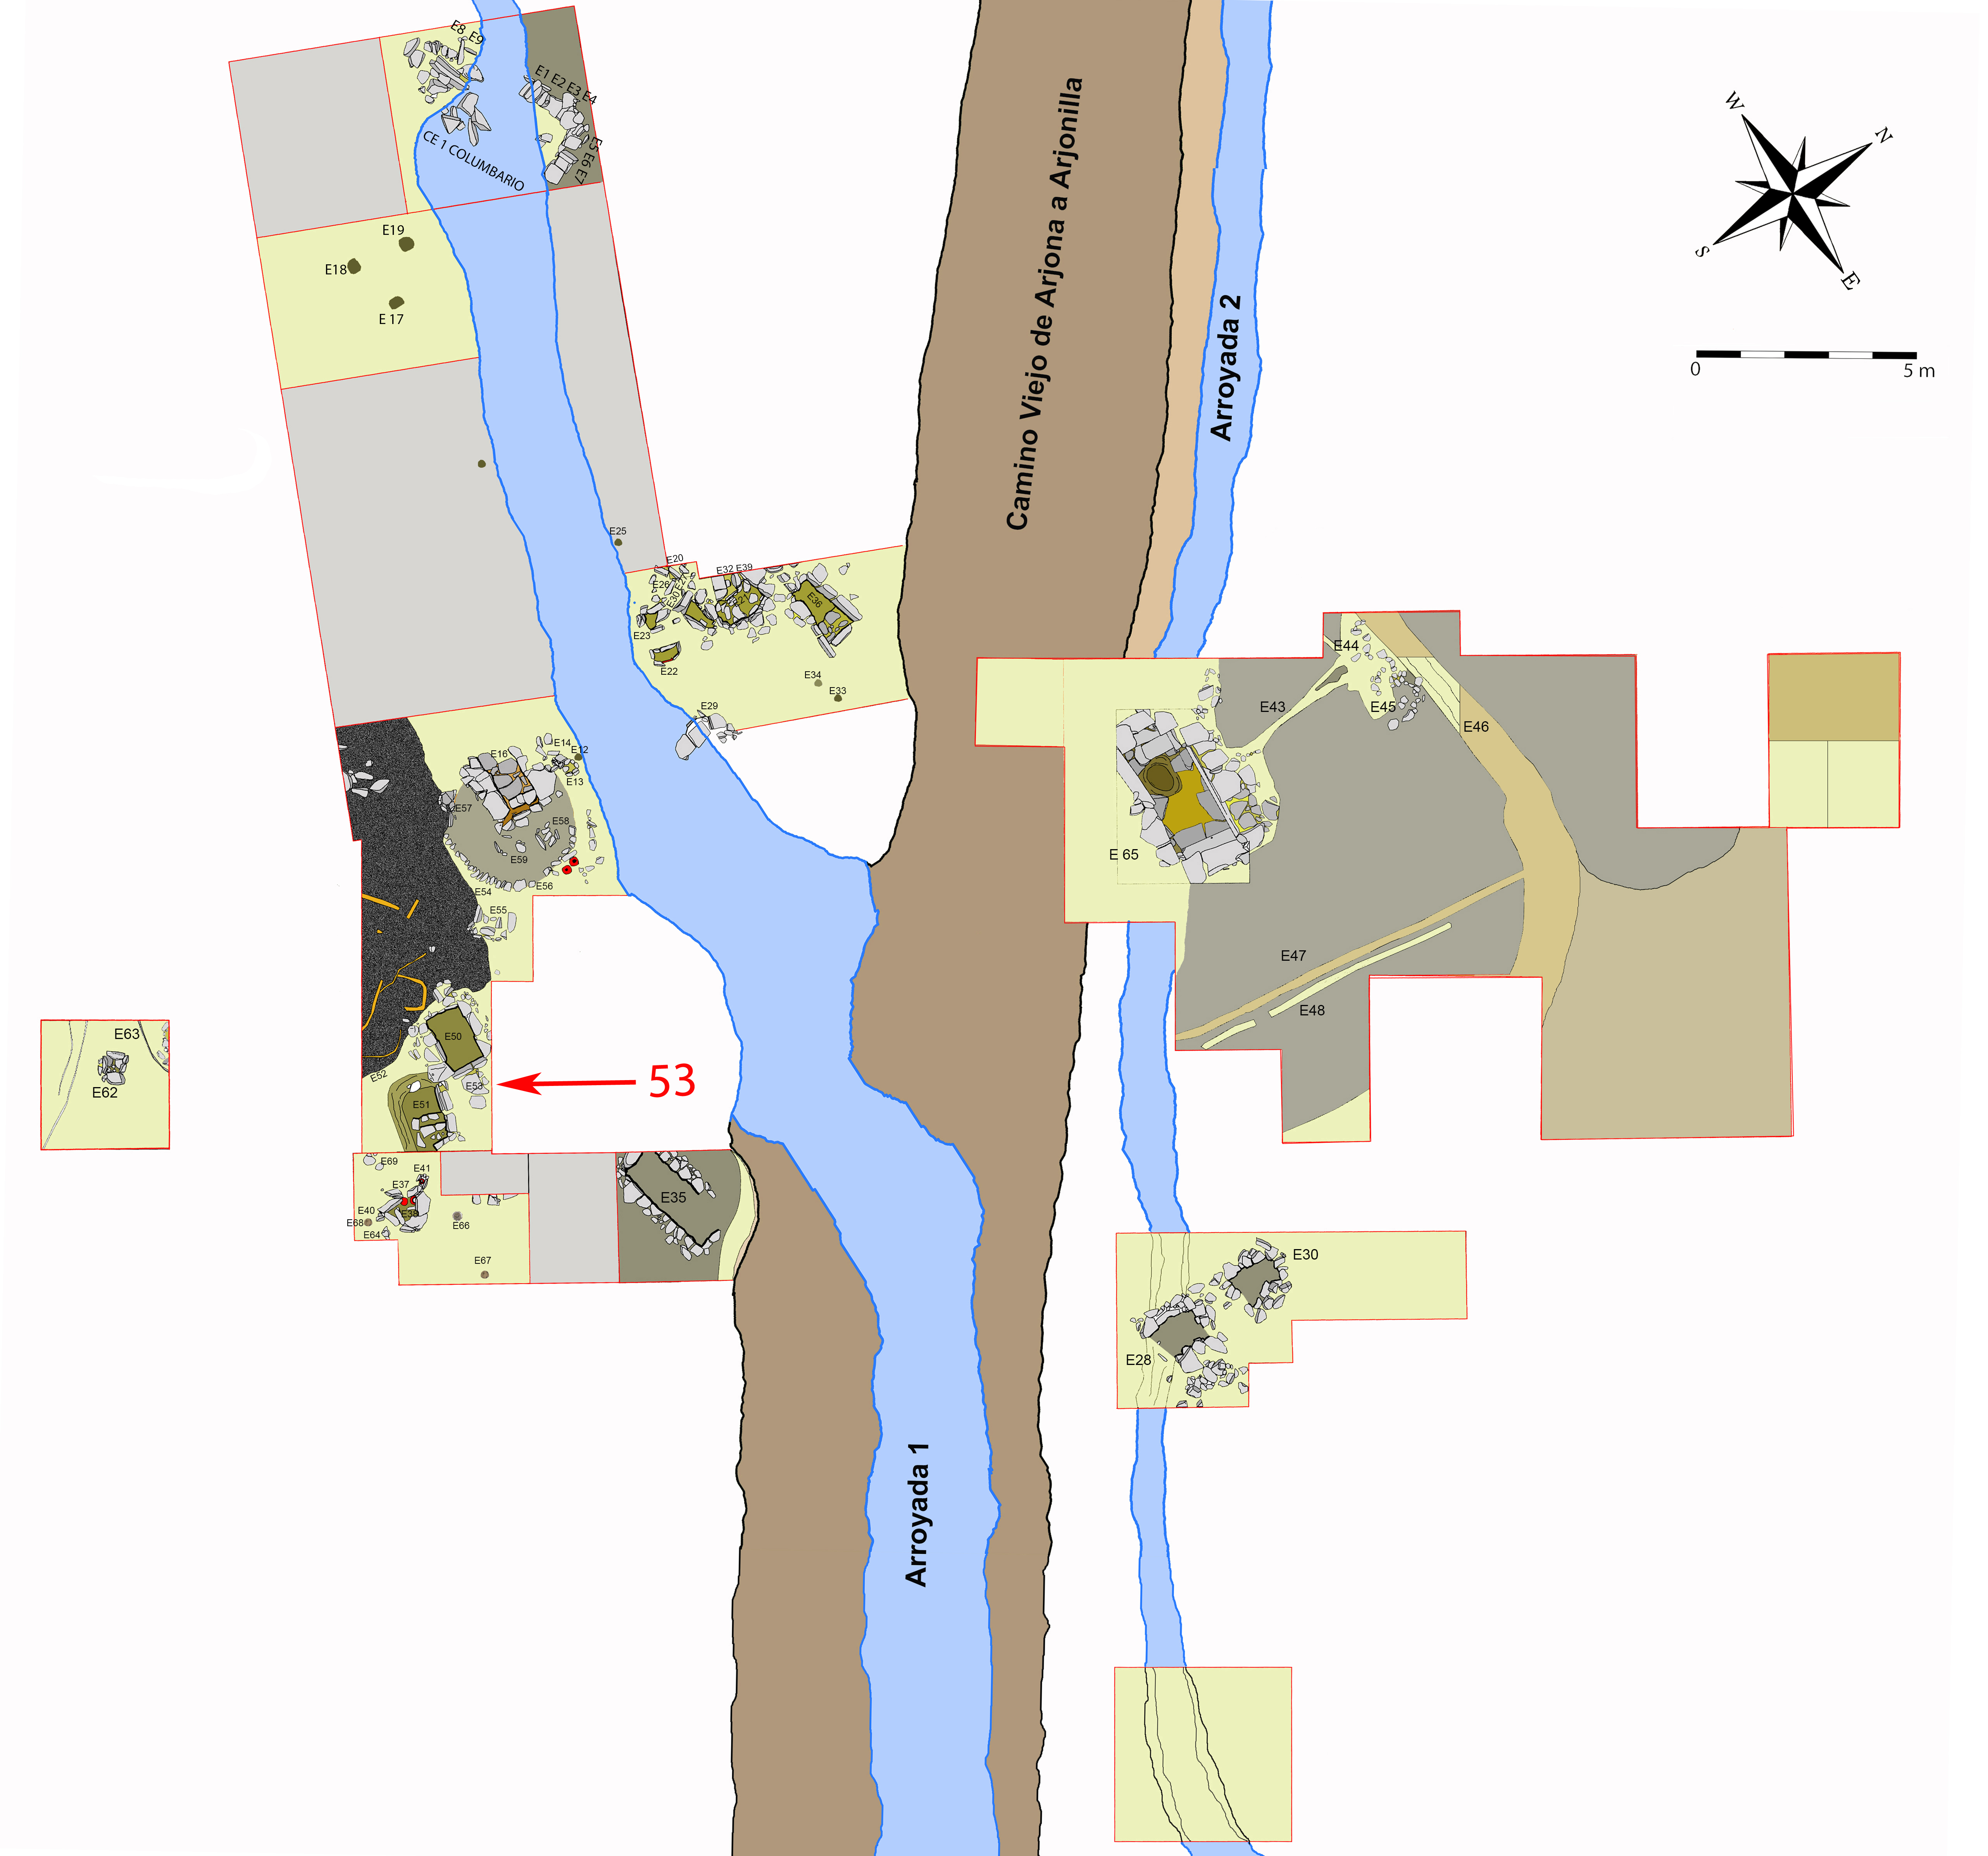 Plano general de la necrópolis de Piquía y localización de la tumba 53